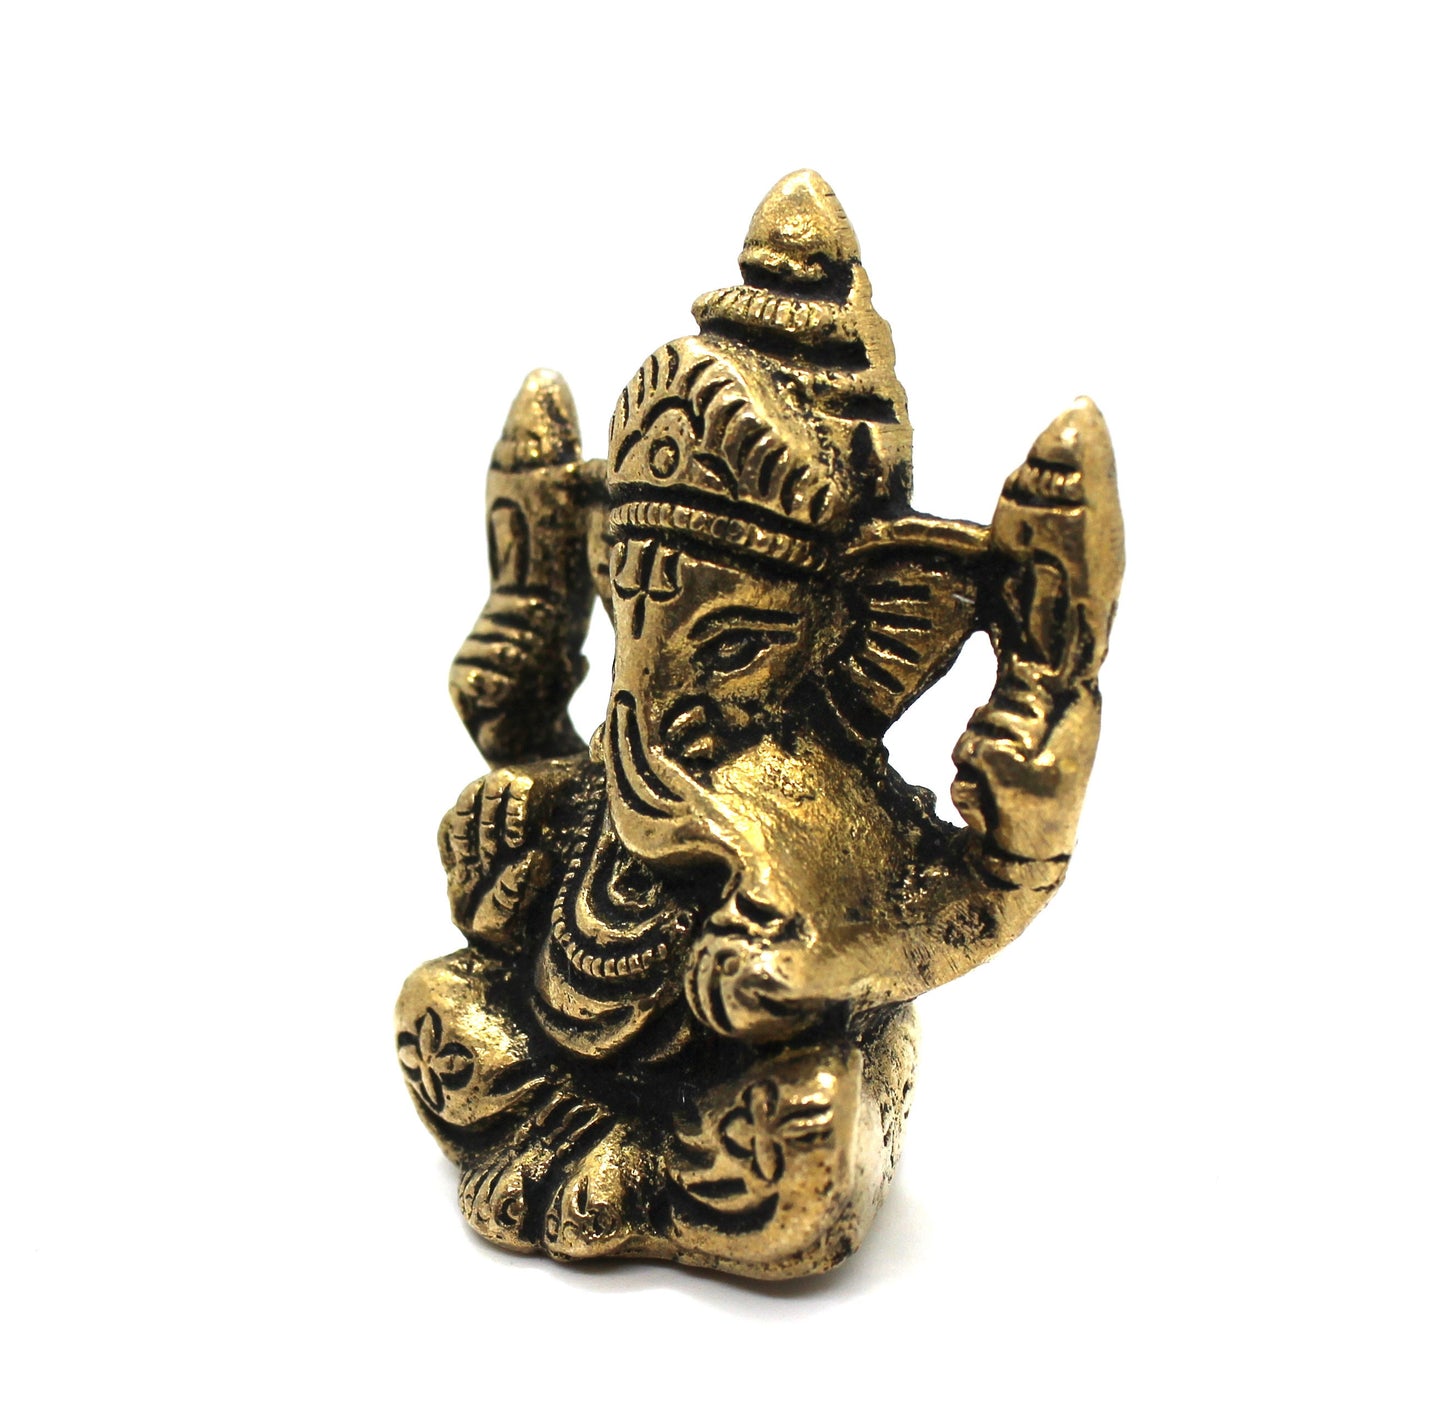 Small Ganesha Statue in Brass, 5.5 CM Brass Ganesh Idol Small, Ganapati Murti, Vinayaka for Hindu God of good luck, success & new beginnings